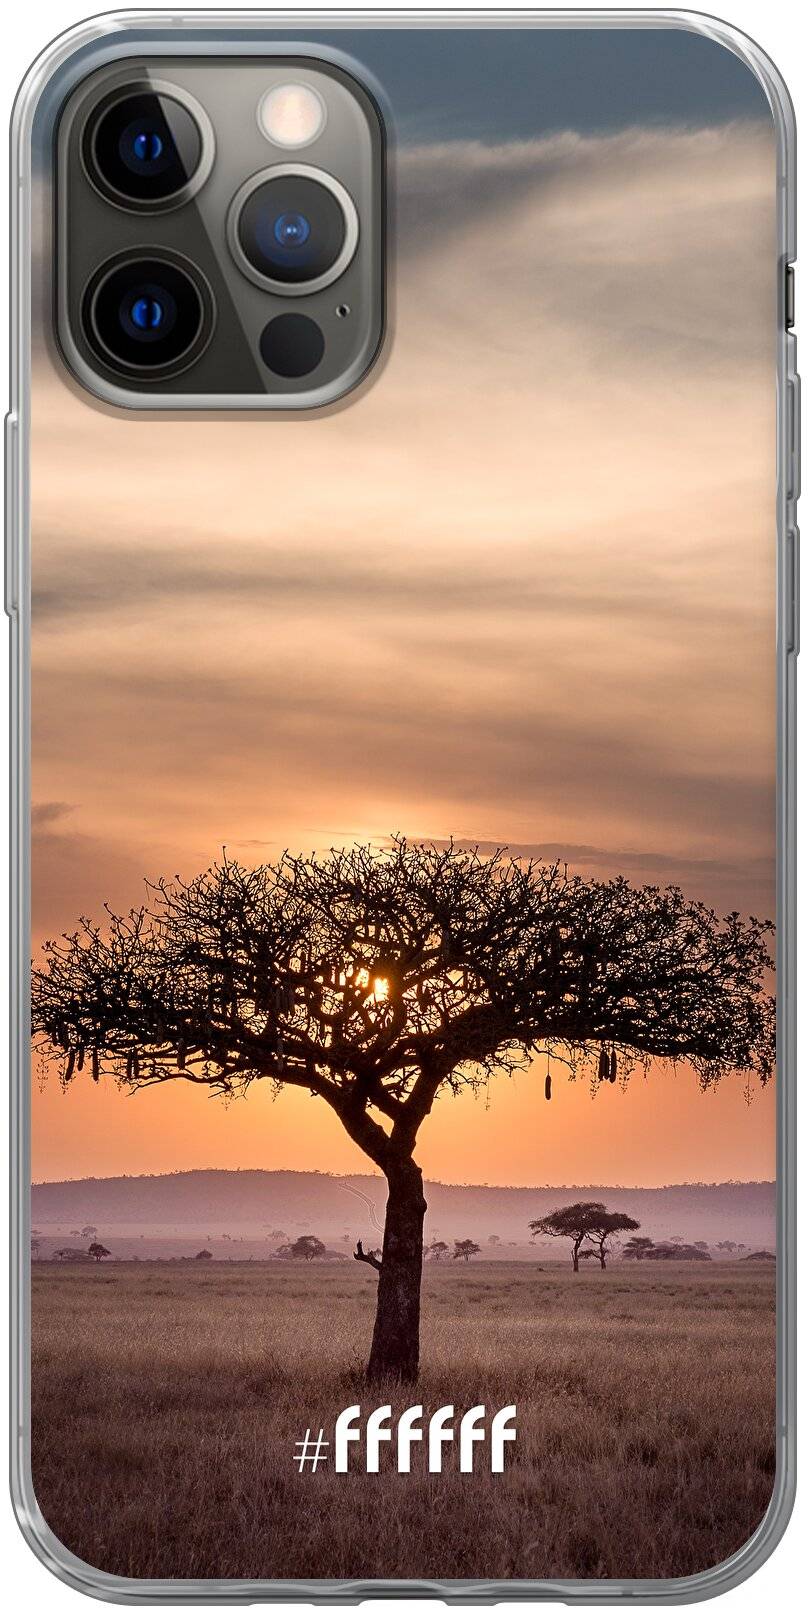 Tanzania iPhone 12